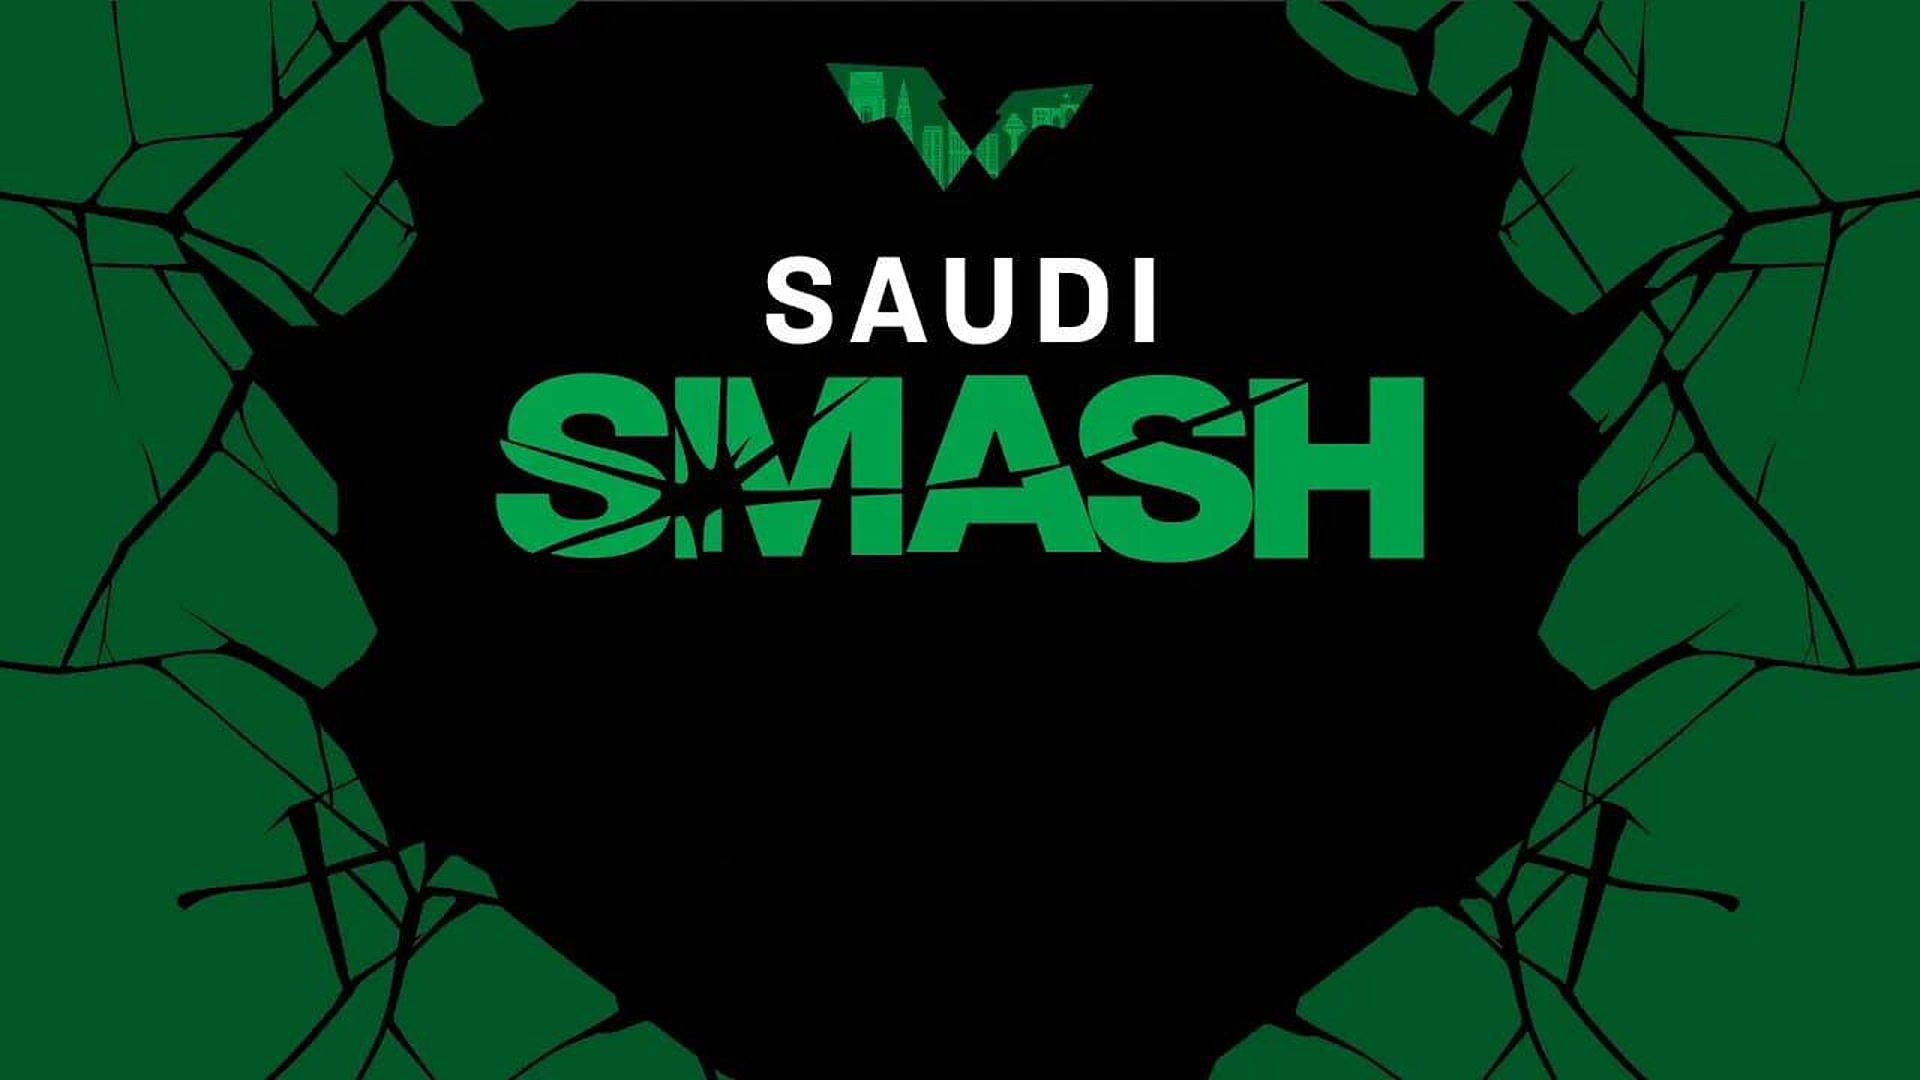 Stoni tenis - Saudi Smash